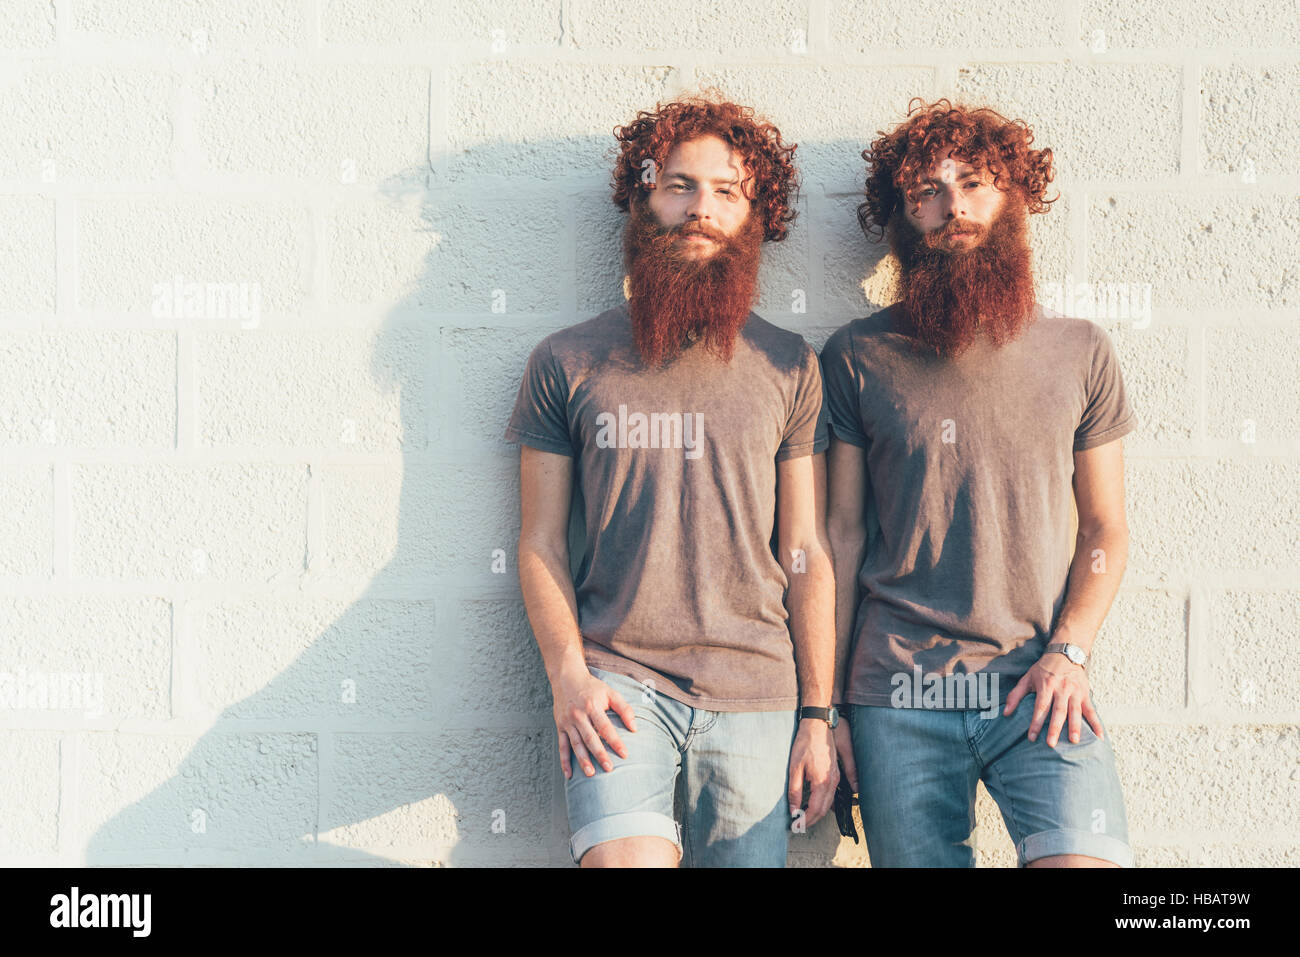 Portrait de jumeaux mâles adultes identiques aux cheveux rouges et barbes contre mur Banque D'Images